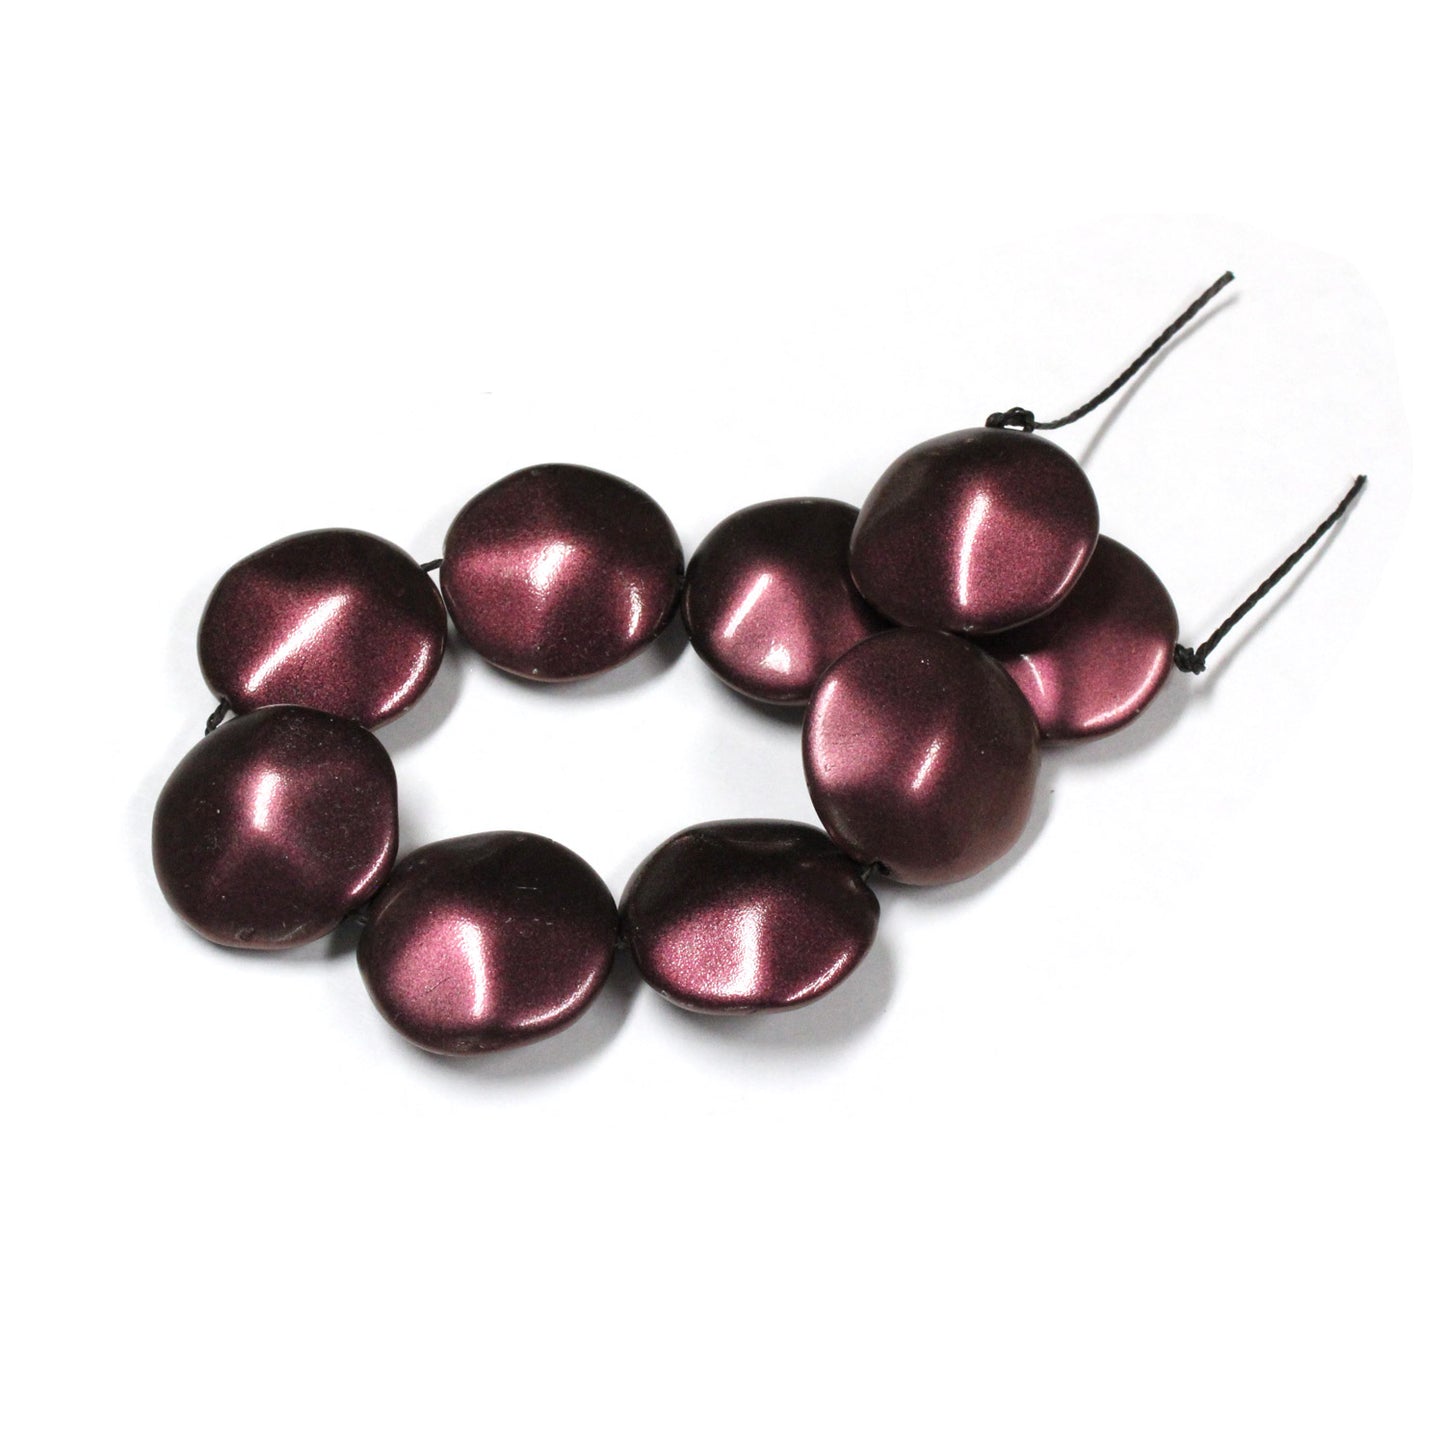 20mm Metallic Plum Glass Coin Beads / 9 Bead Pack / irregular round puffed shape bead / Czech glass